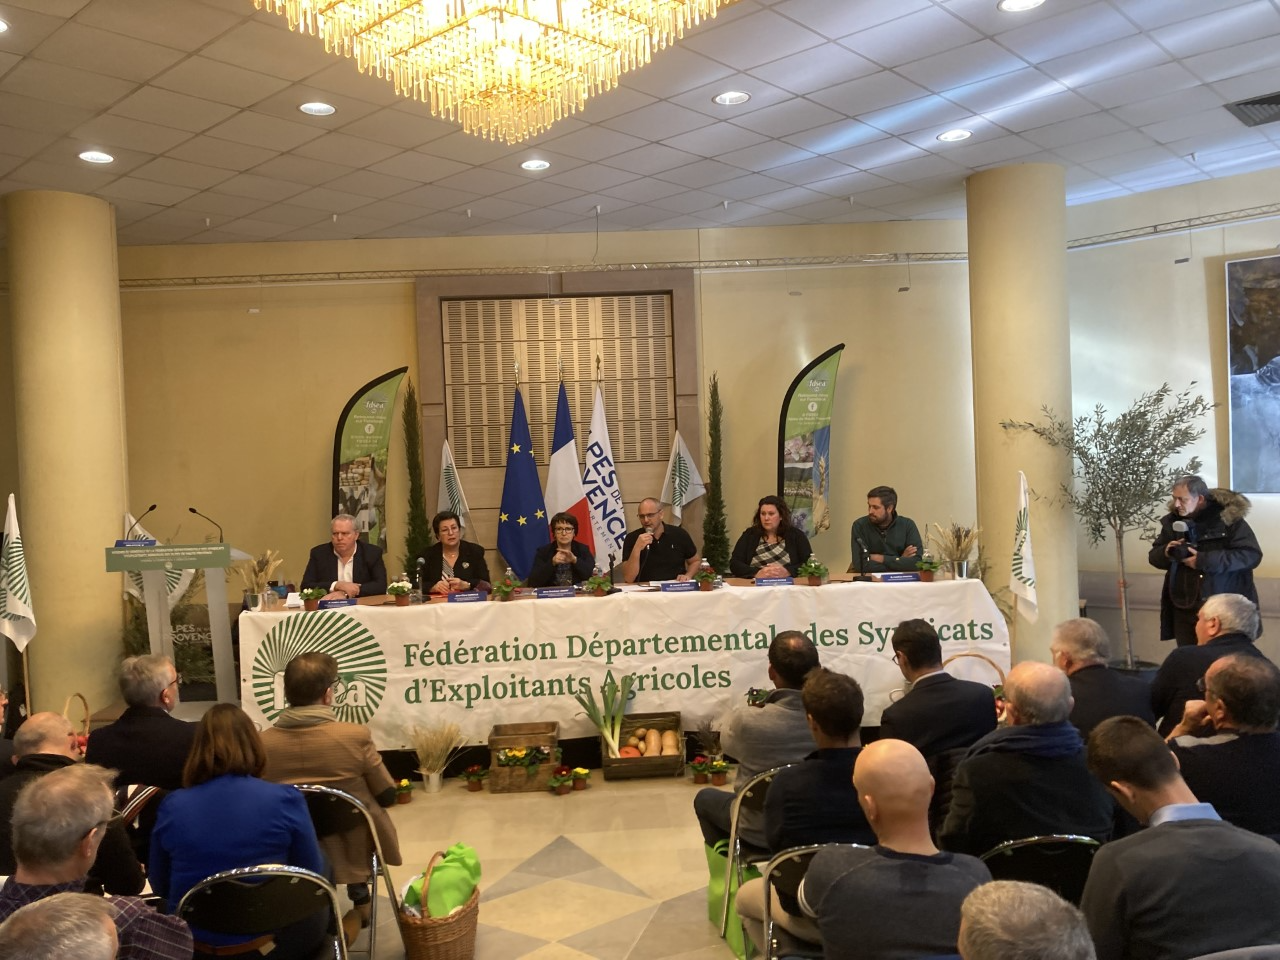 La Fédération départementale des syndicats d'exploitants agricoles en assemblée générale a Digne